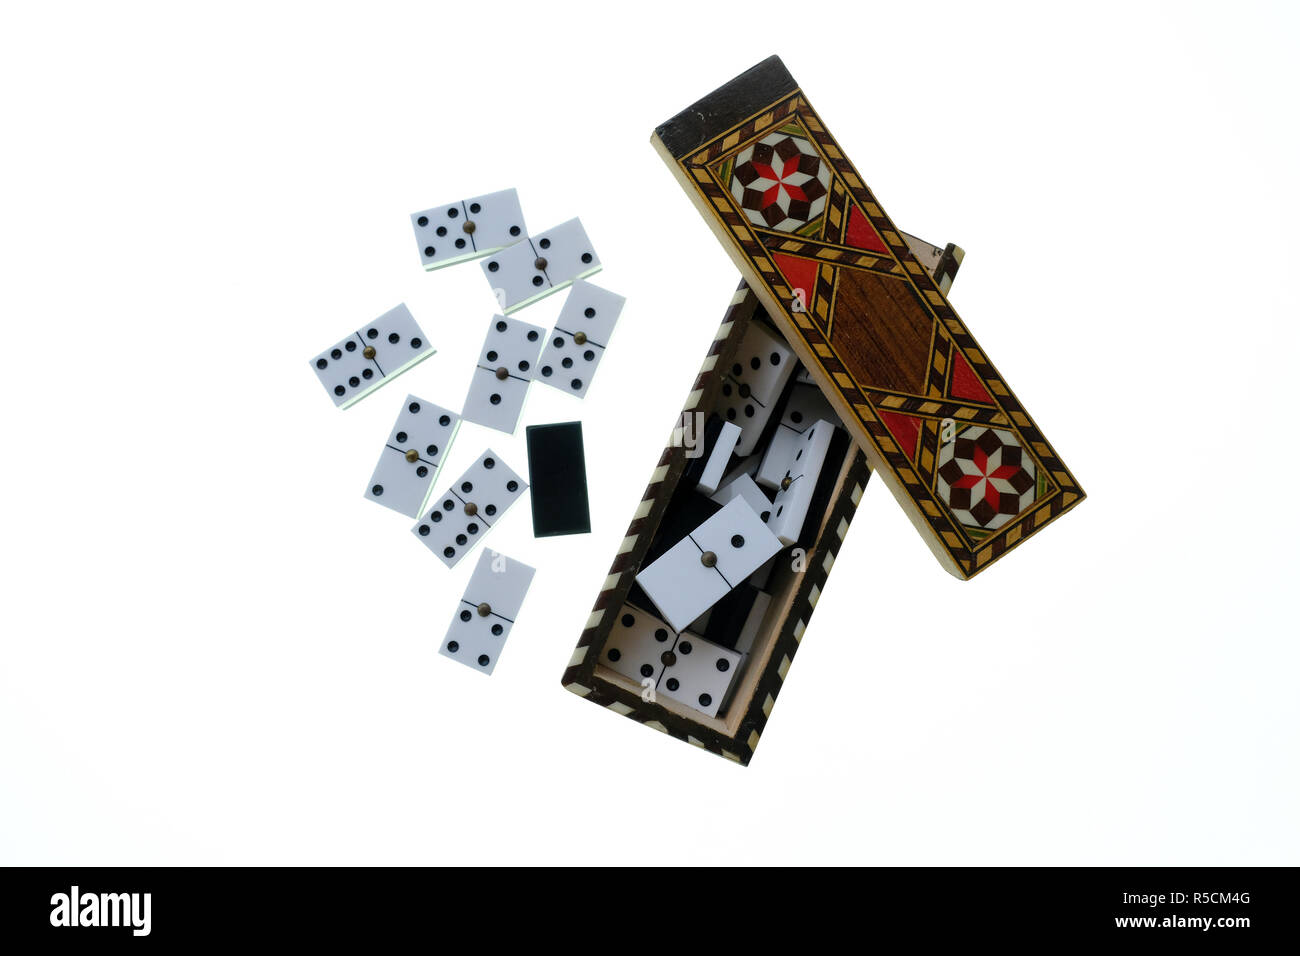 Petite boîte en bois avec couvercle coulissant marqueterie contenant un ensemble de petits dominos blancs avec des points noirs. Le tout sur un fond blanc Banque D'Images